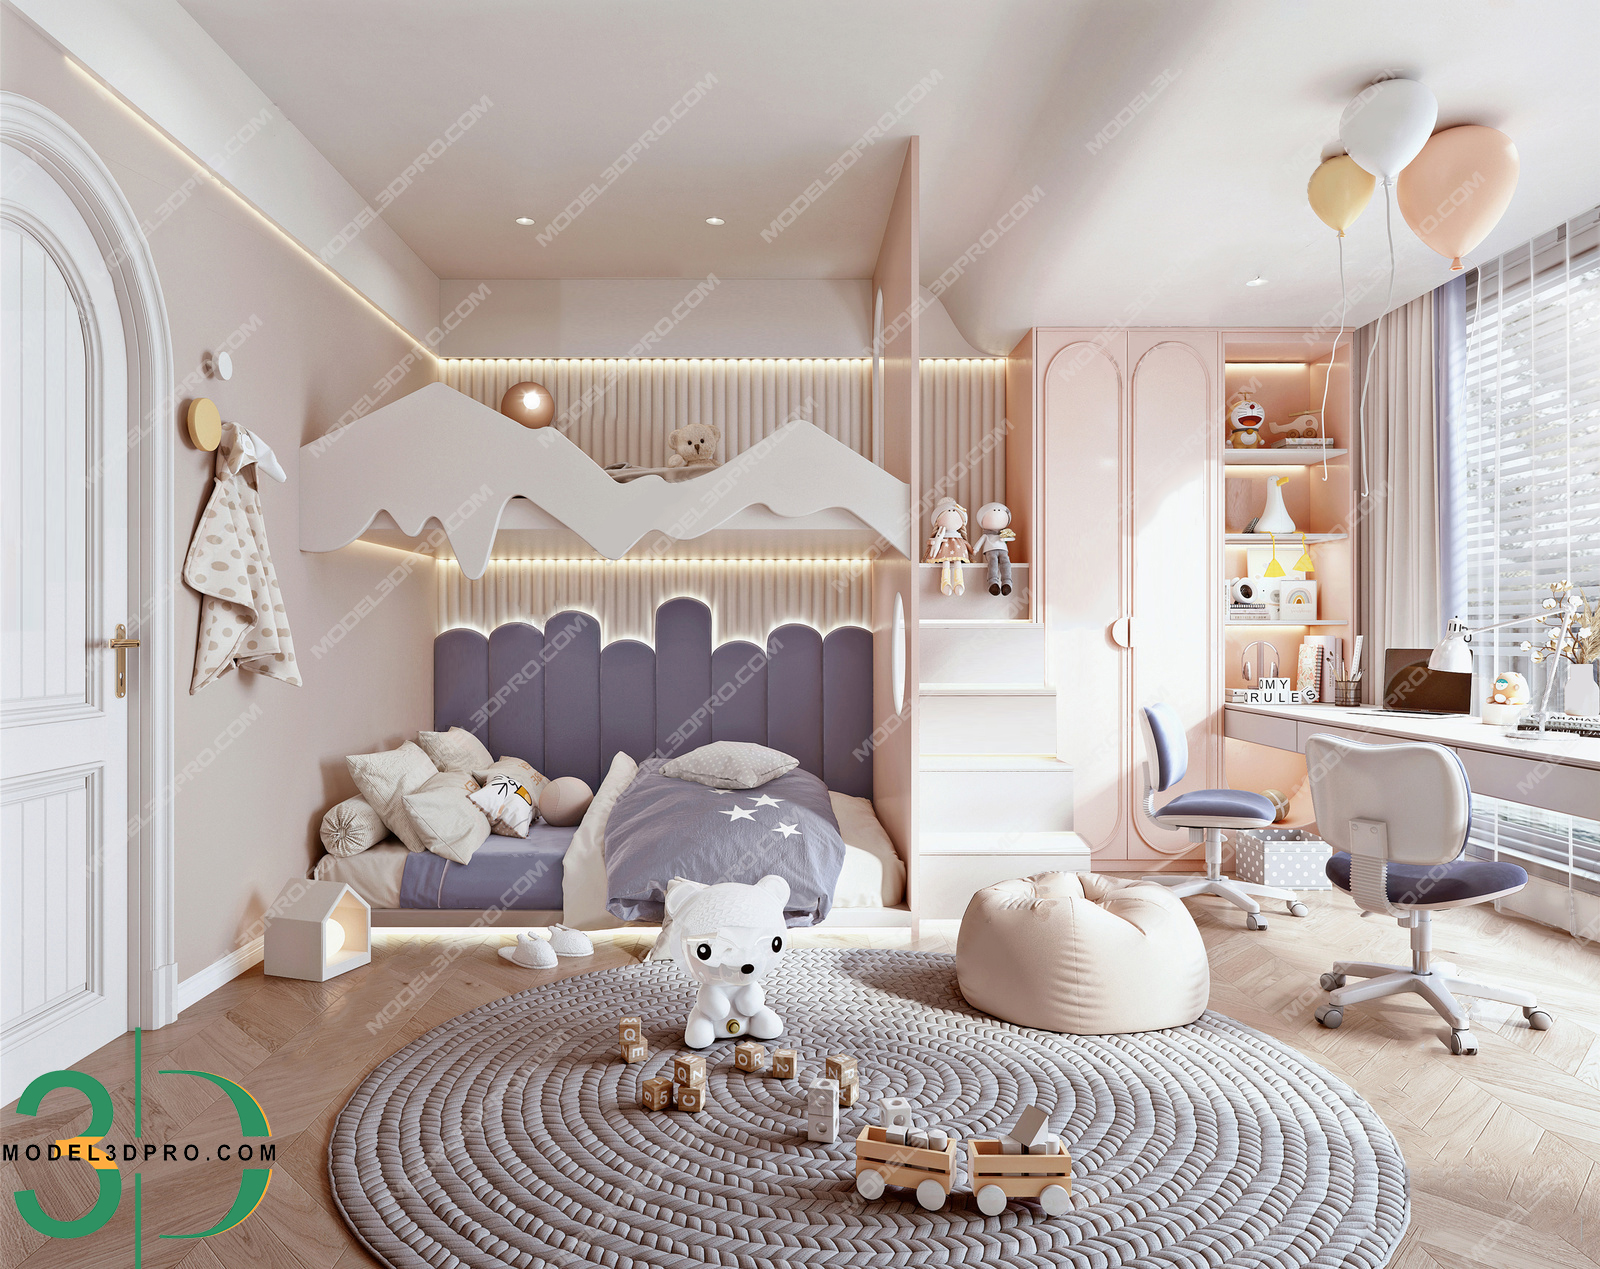 Children'S Bedroom 3D Models for Download